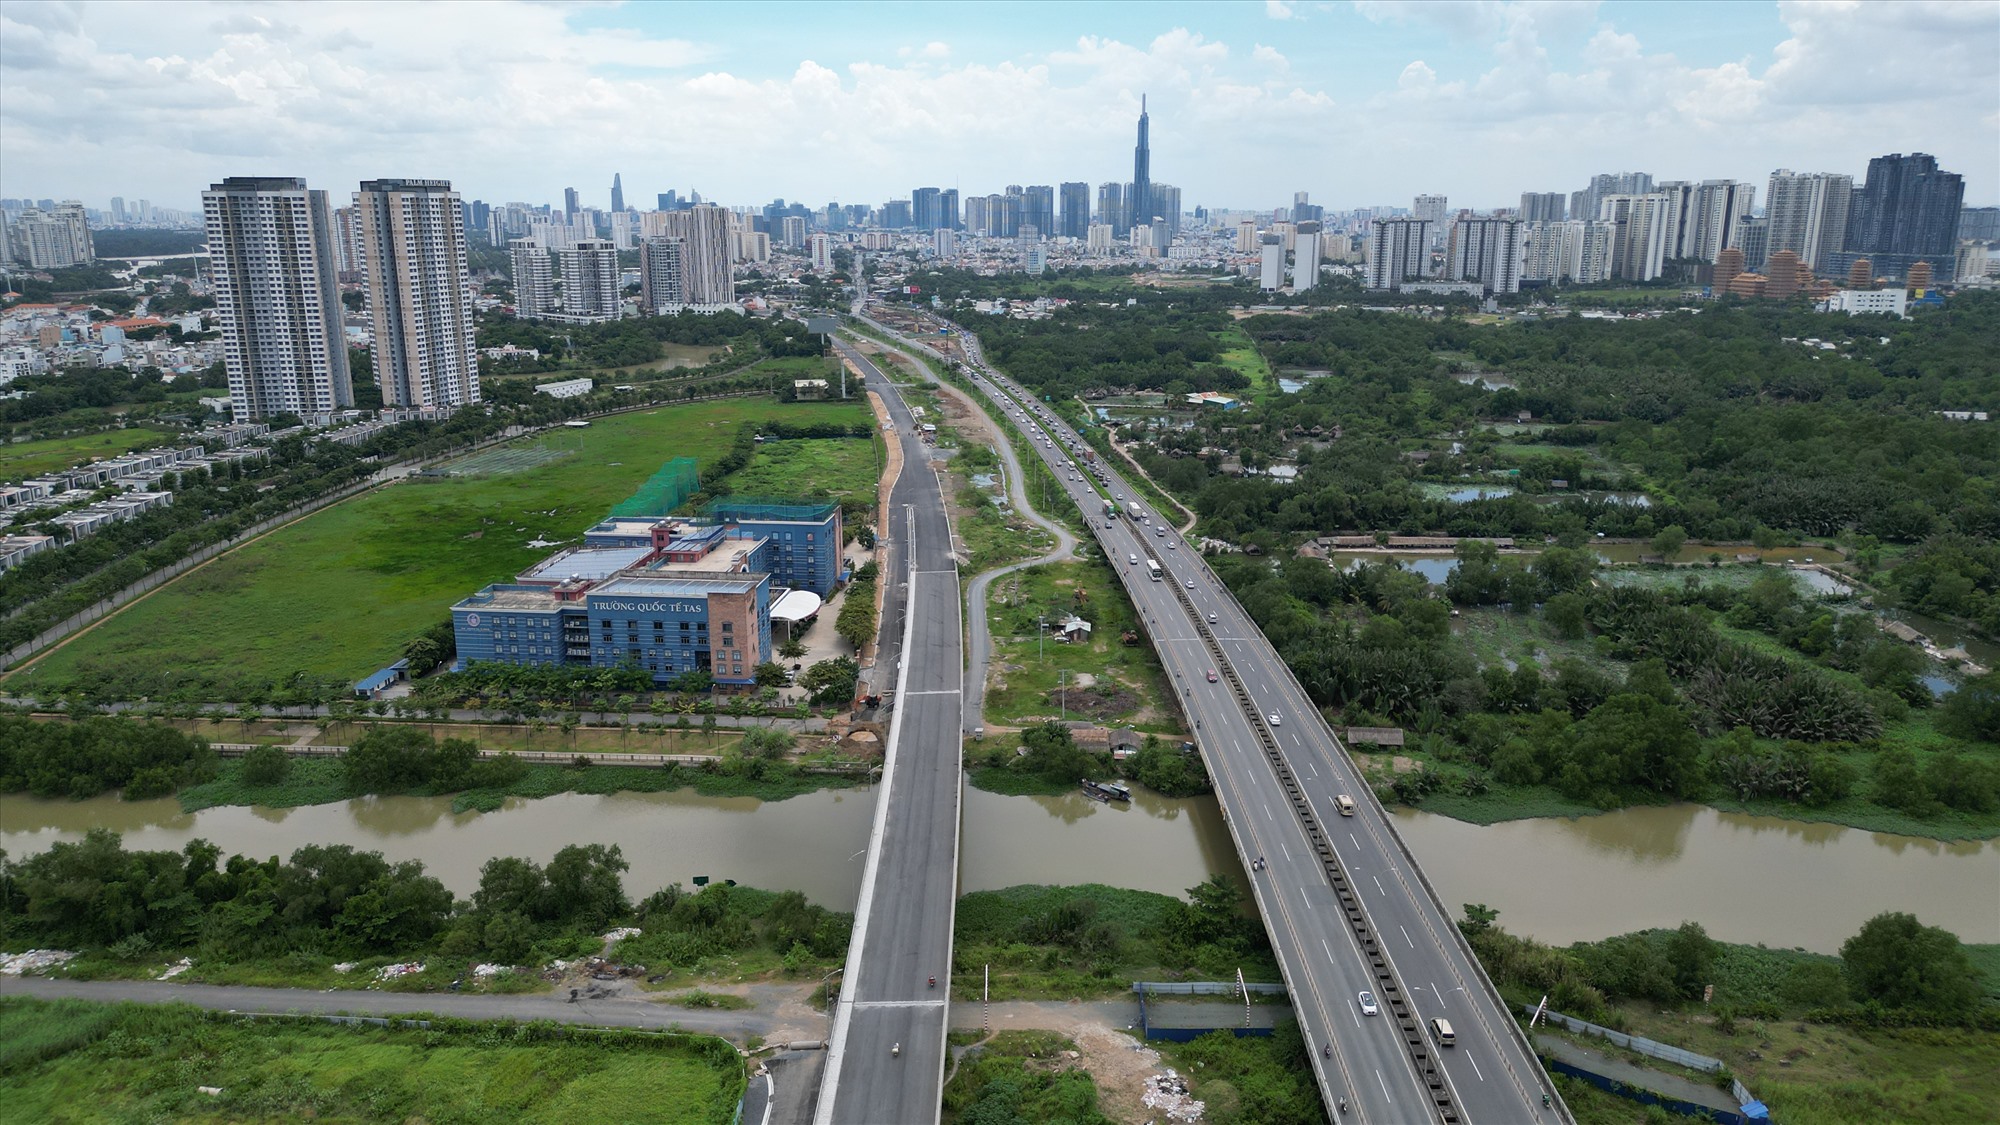 Cao tốc TP HCM - Long Thành - Dầu Giây giai đoạn 1 với quy mô 4 làn xe đã được Tổng công ty Đầu tư phát triển đường cao tốc Việt Nam (VEC) đầu tư và đưa vào khai thác năm 2016.